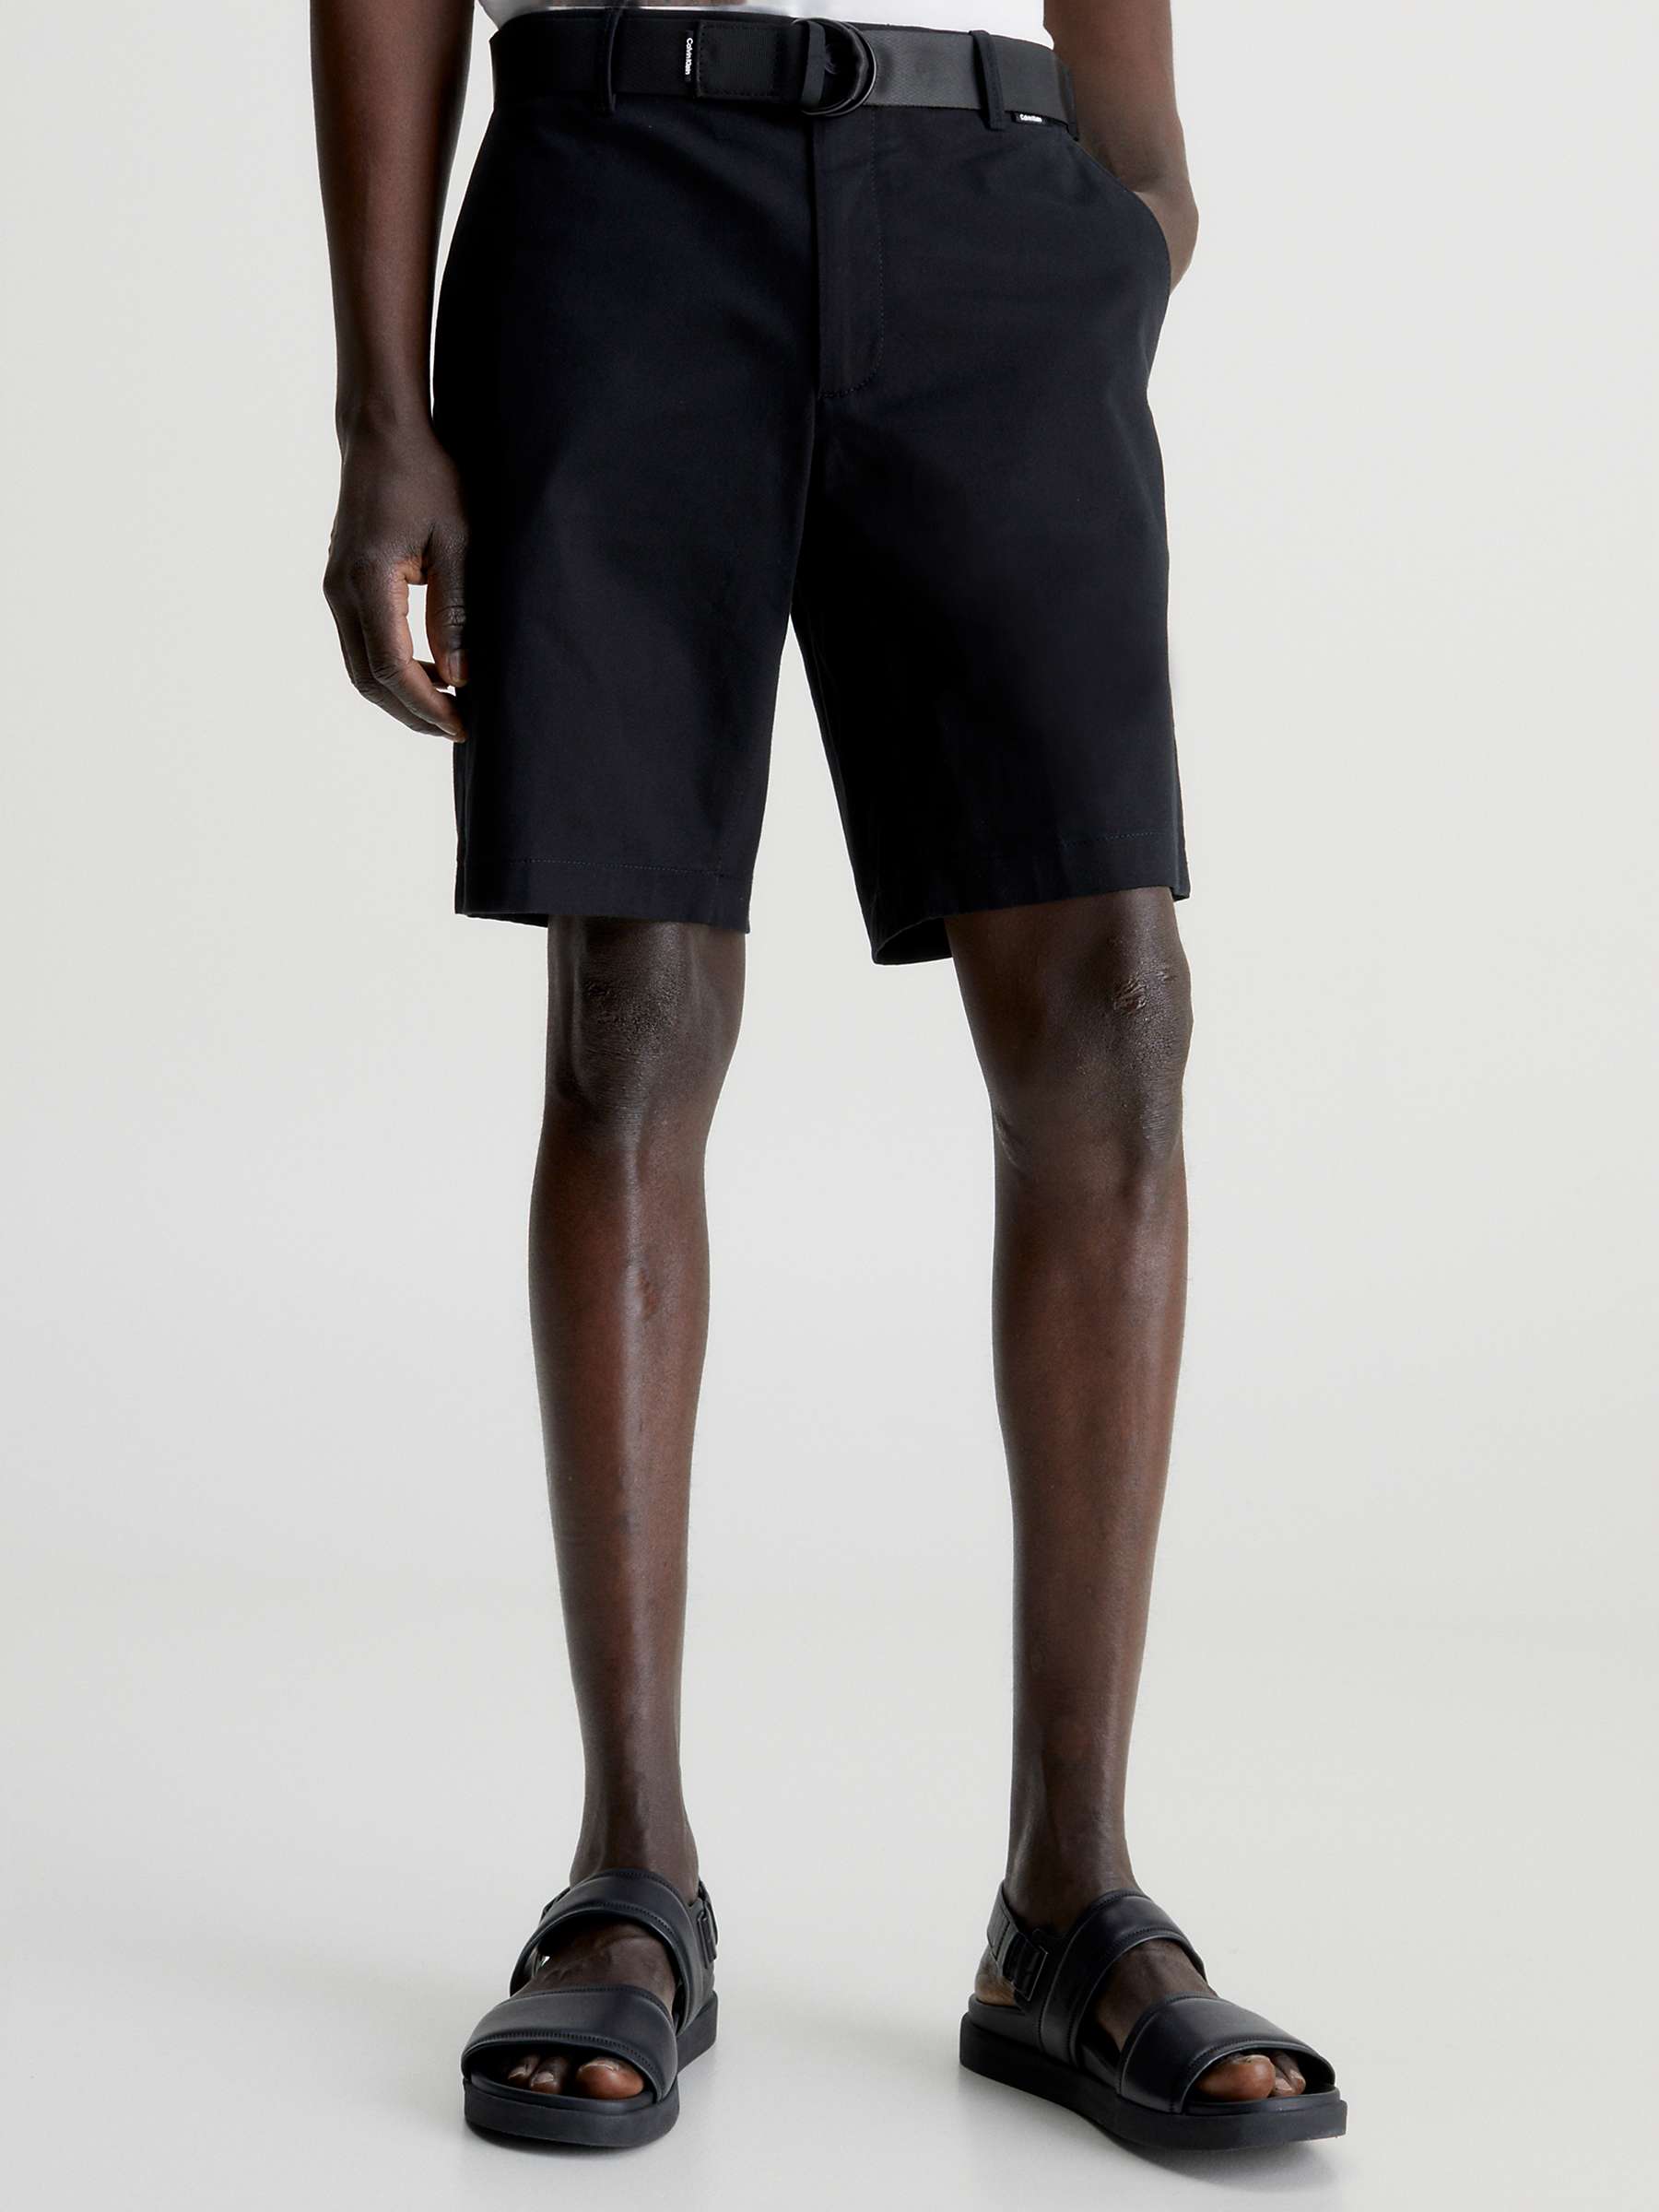 Buy Calvin Klein Modern Twill Slim Short, Black Online at johnlewis.com